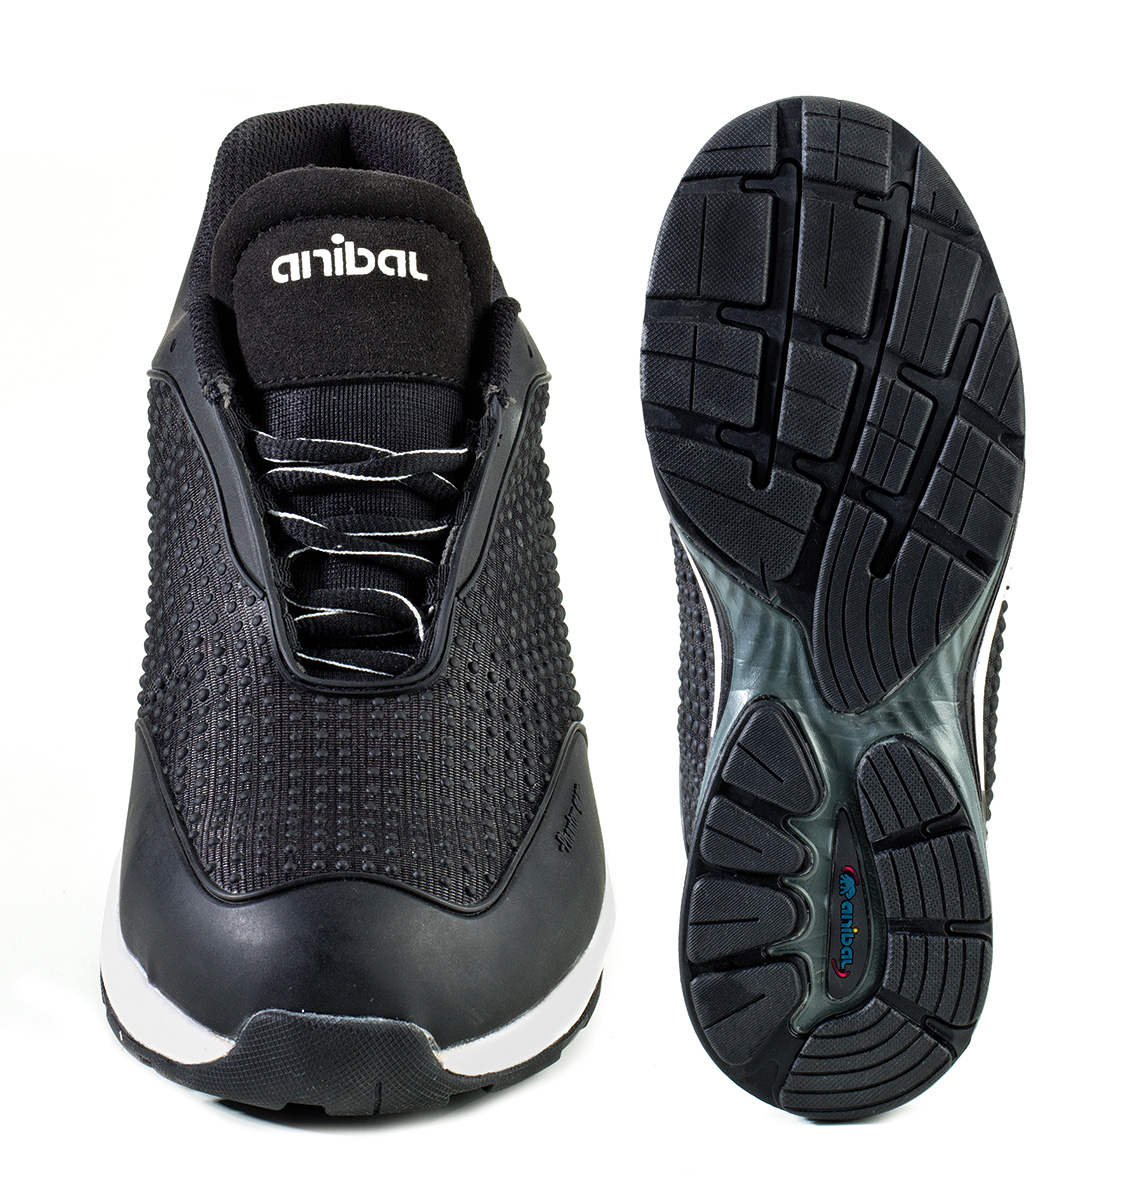 1688-ZPH Calzado de Seguridad Sporty Zapato mod. “OXILOS”. Zapato microfibra con tecnología Phantom de Alta Visibilidad en S1P. Suela de Poliuretano doble densidad SRC.